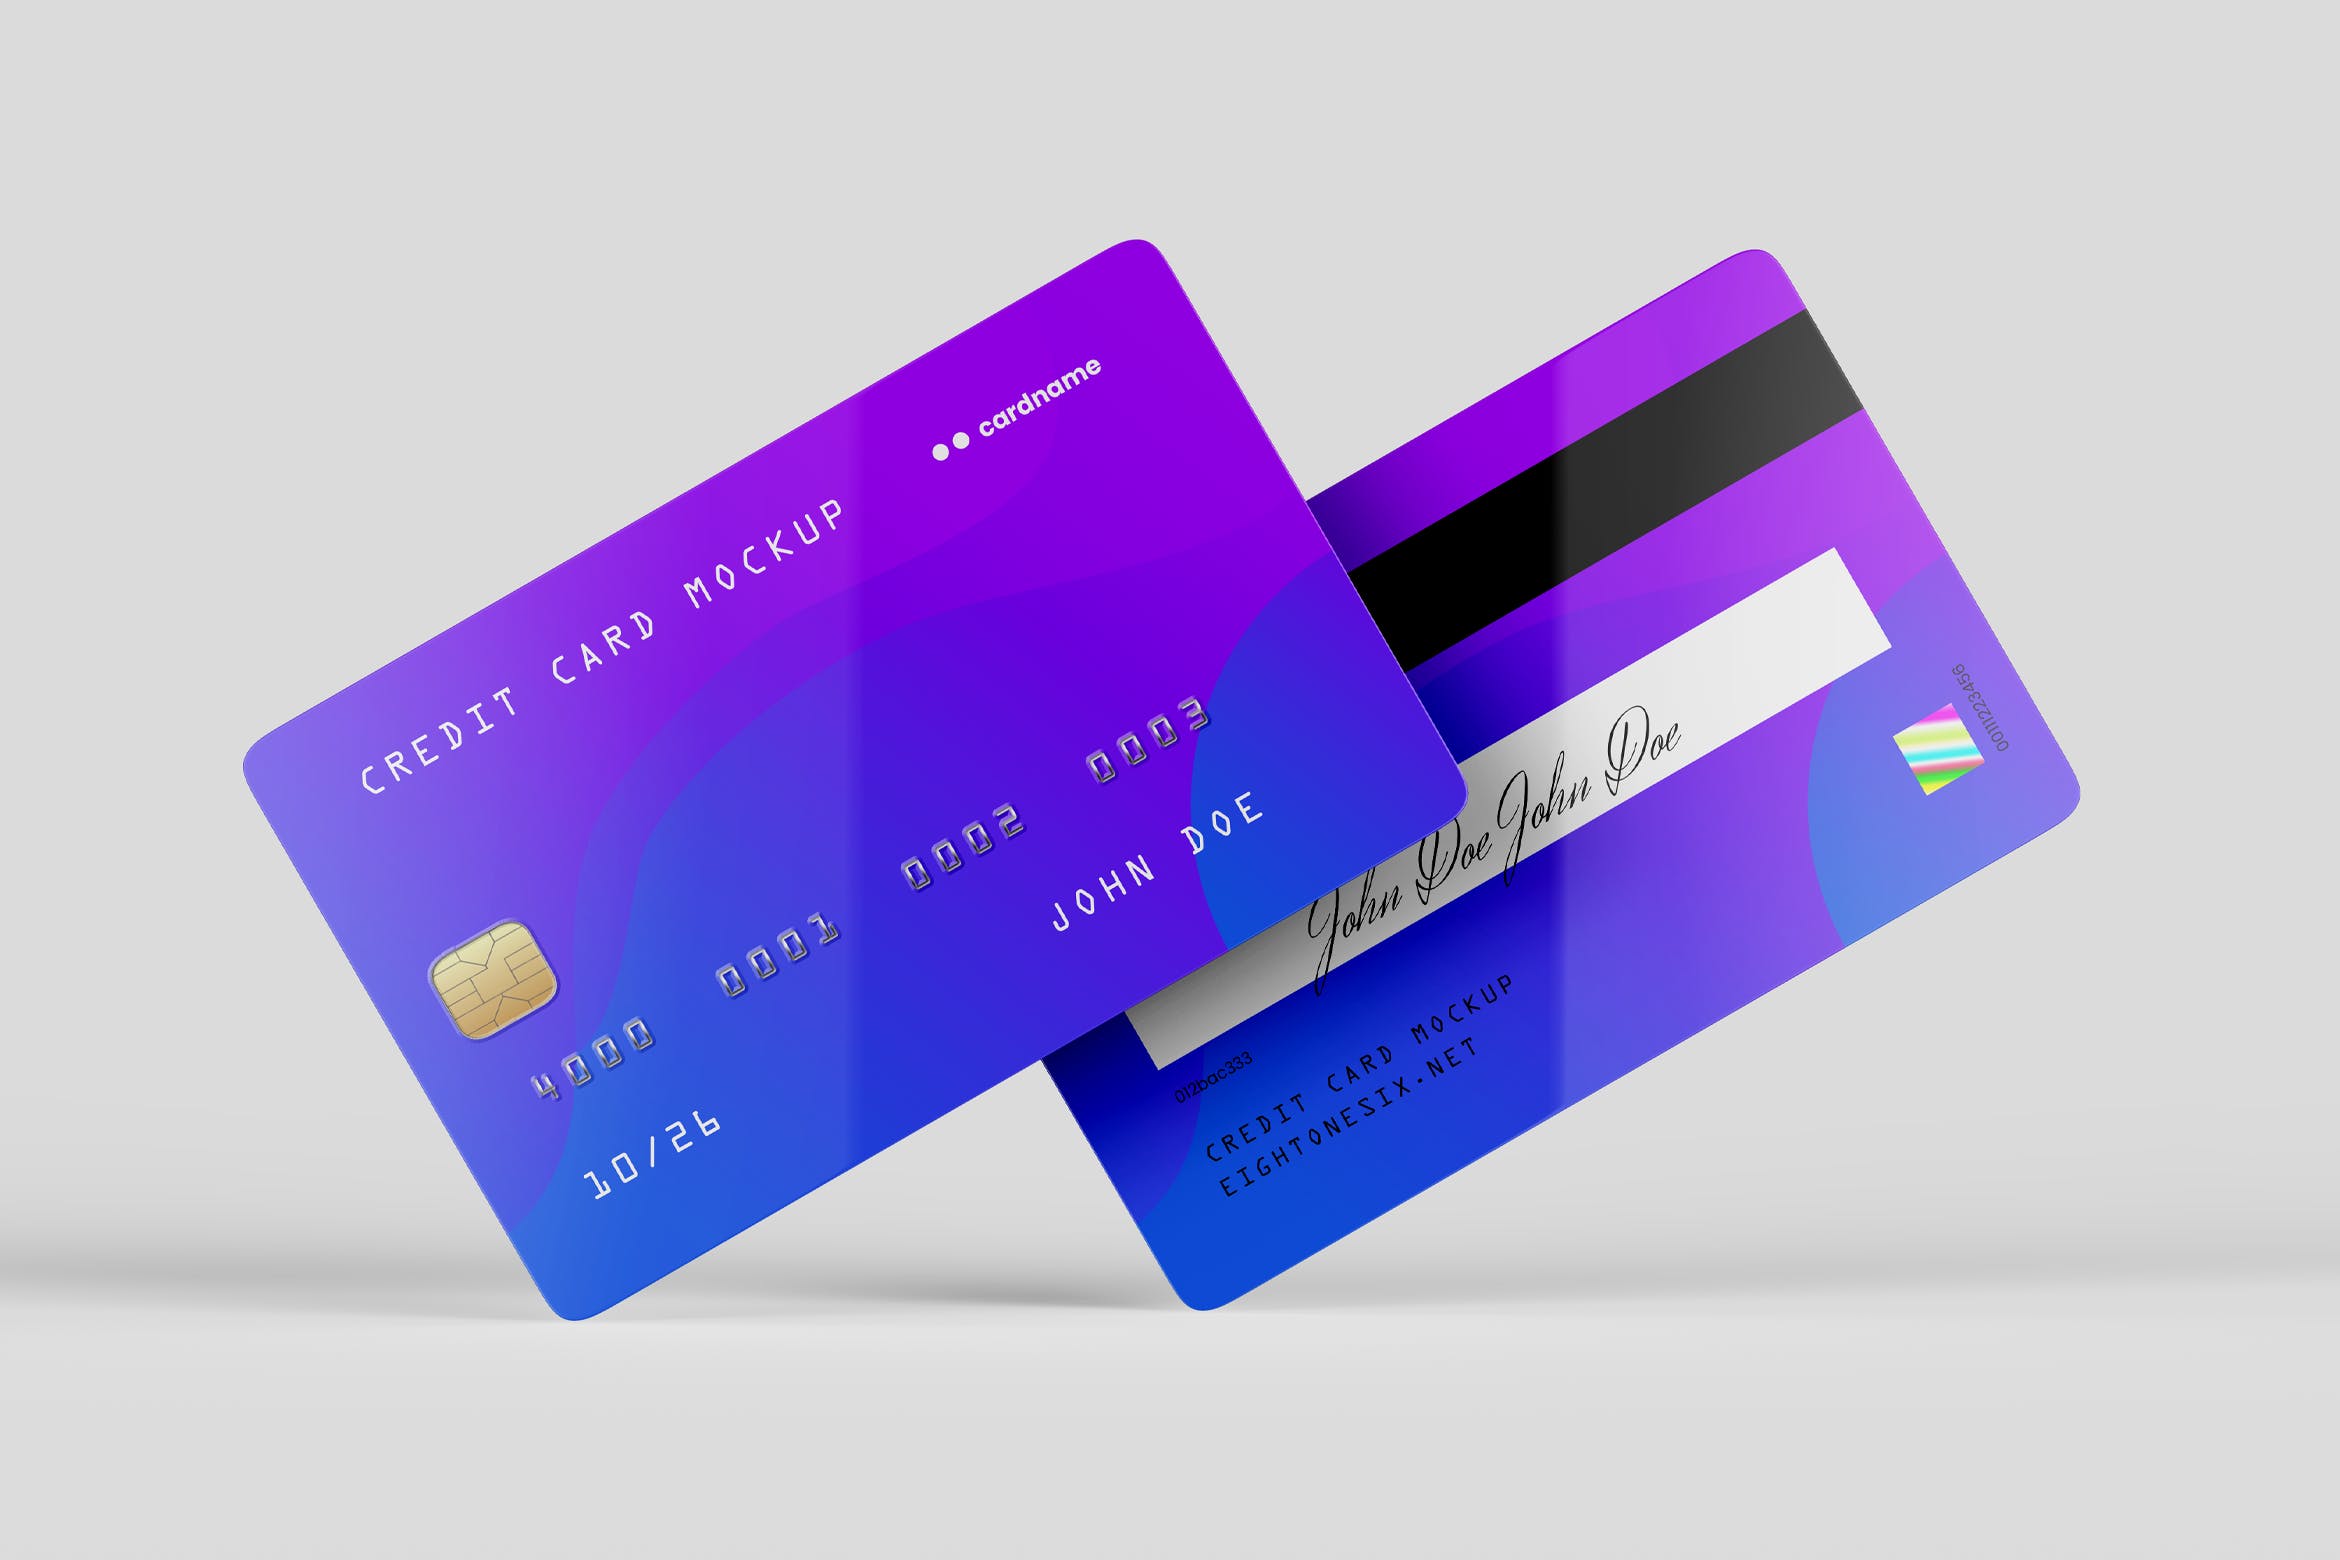 信用卡/银行卡/会员卡设计效果图样机素材库精选模板 Credit Card Mock-Up Template插图